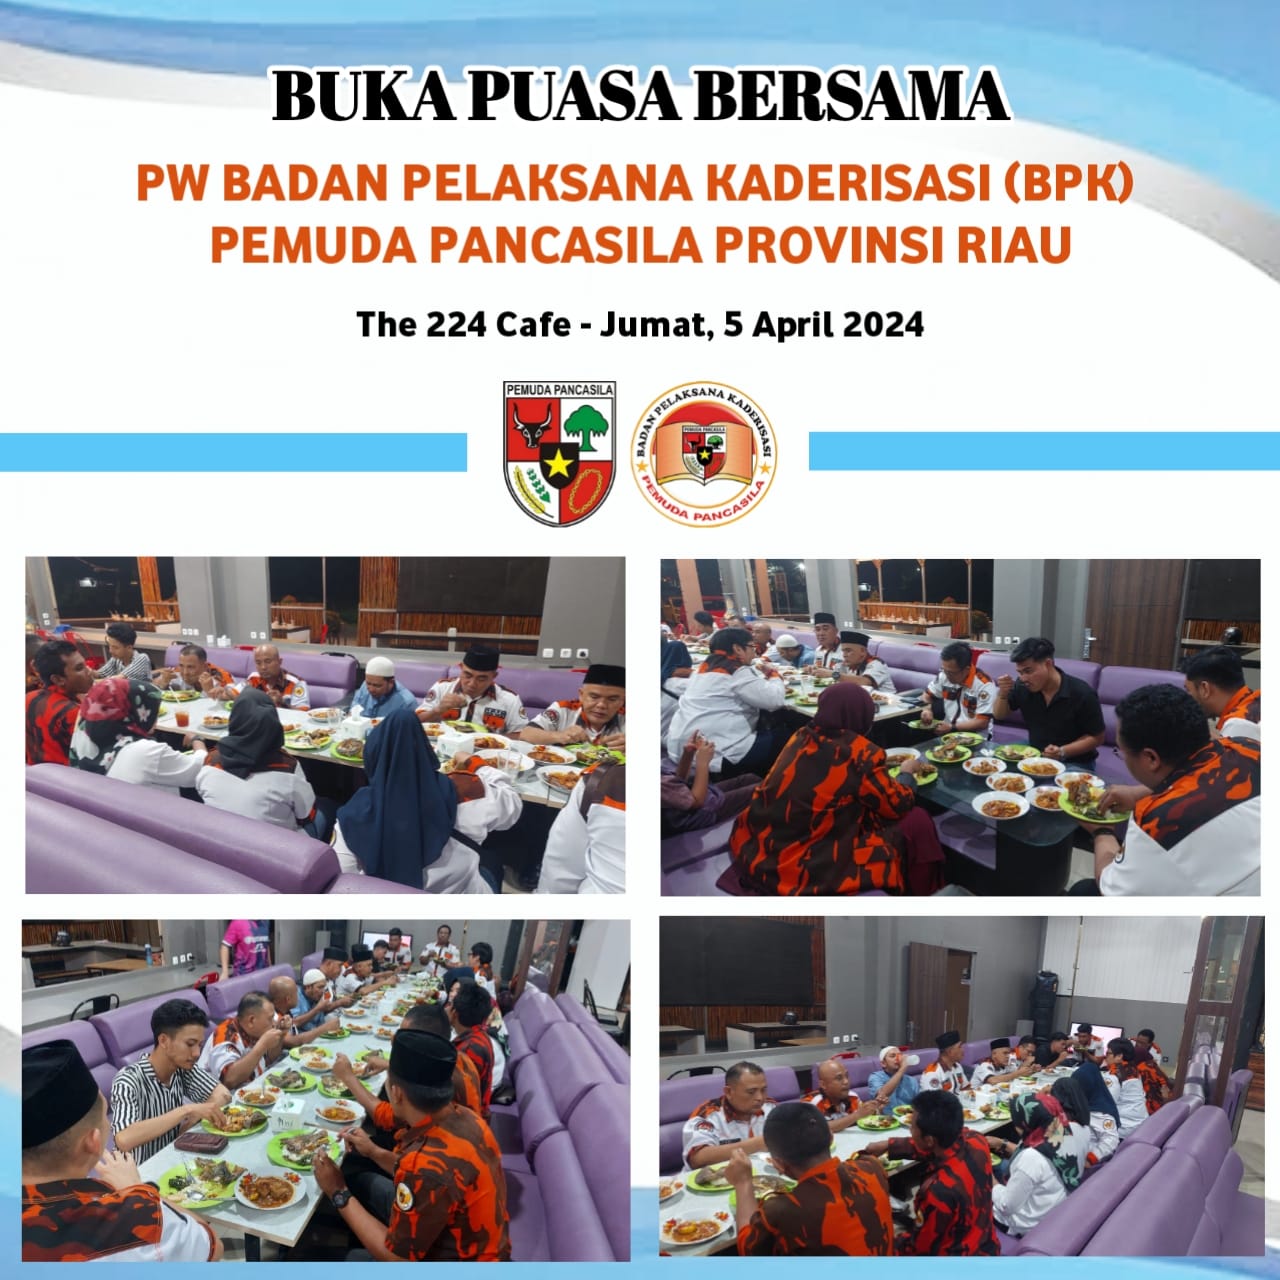 PW Badan Pelaksana Kaderisasi (BPK) Pemuda Pancasila Provinsi Riau Gelar Silaturahmi Ramadan dan Buka Puasa Bersama